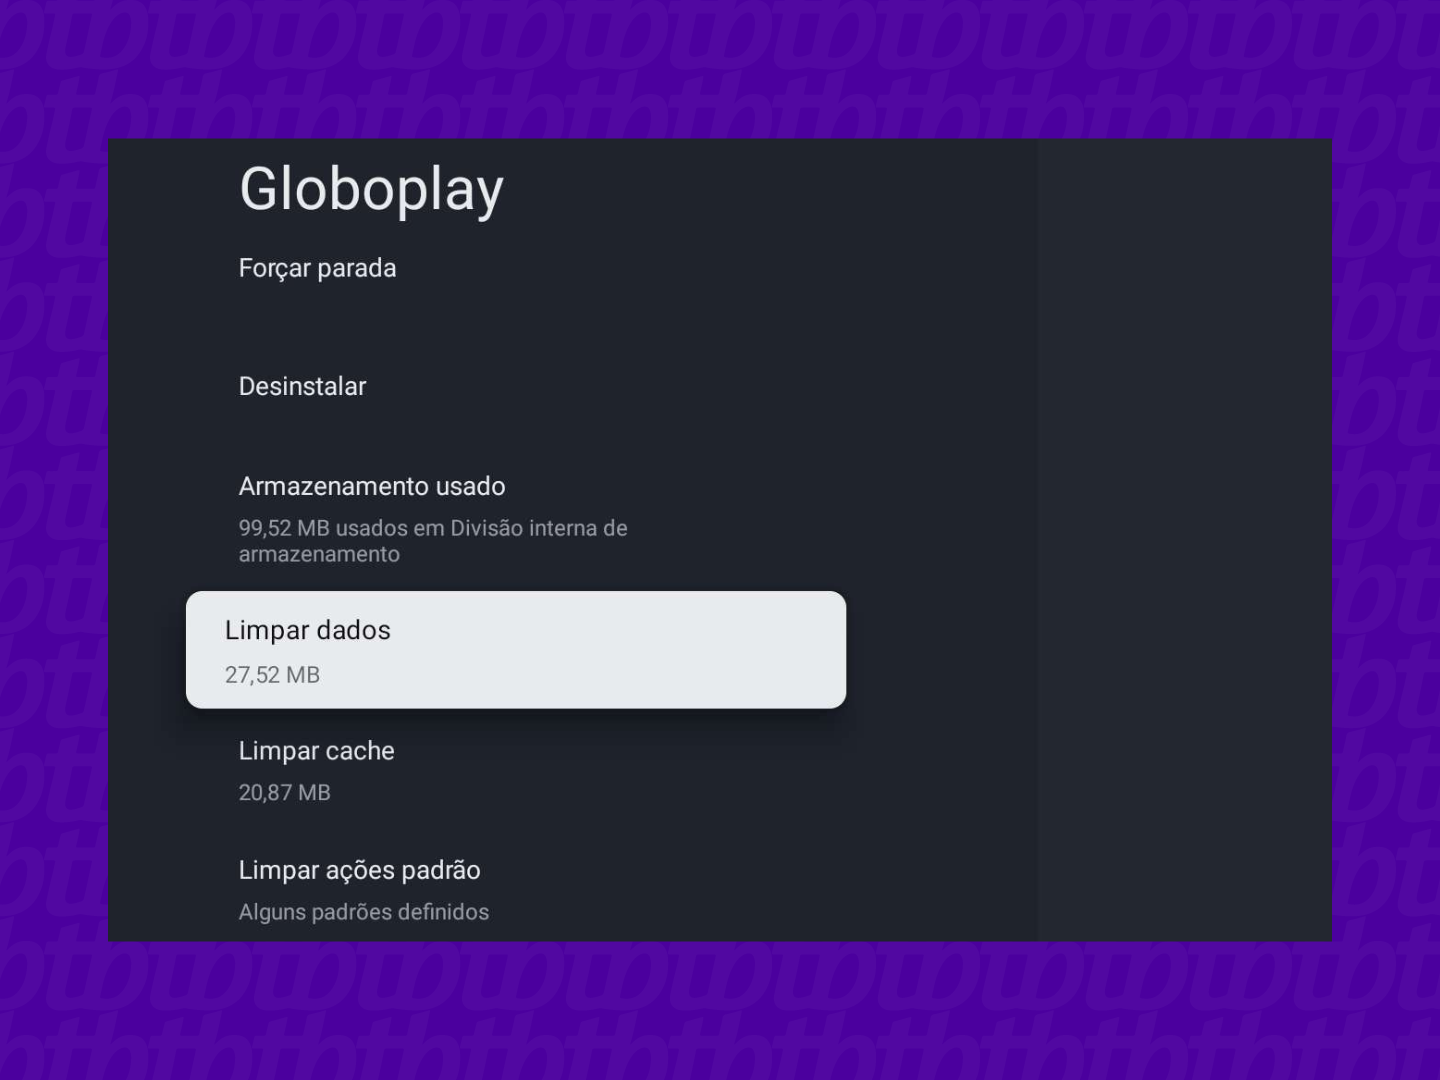 Meu acesso ao conteúdo do globoplay ainda não está liberado, porém o  pagamento foi feito a 3 dias - Comunidade Google Play